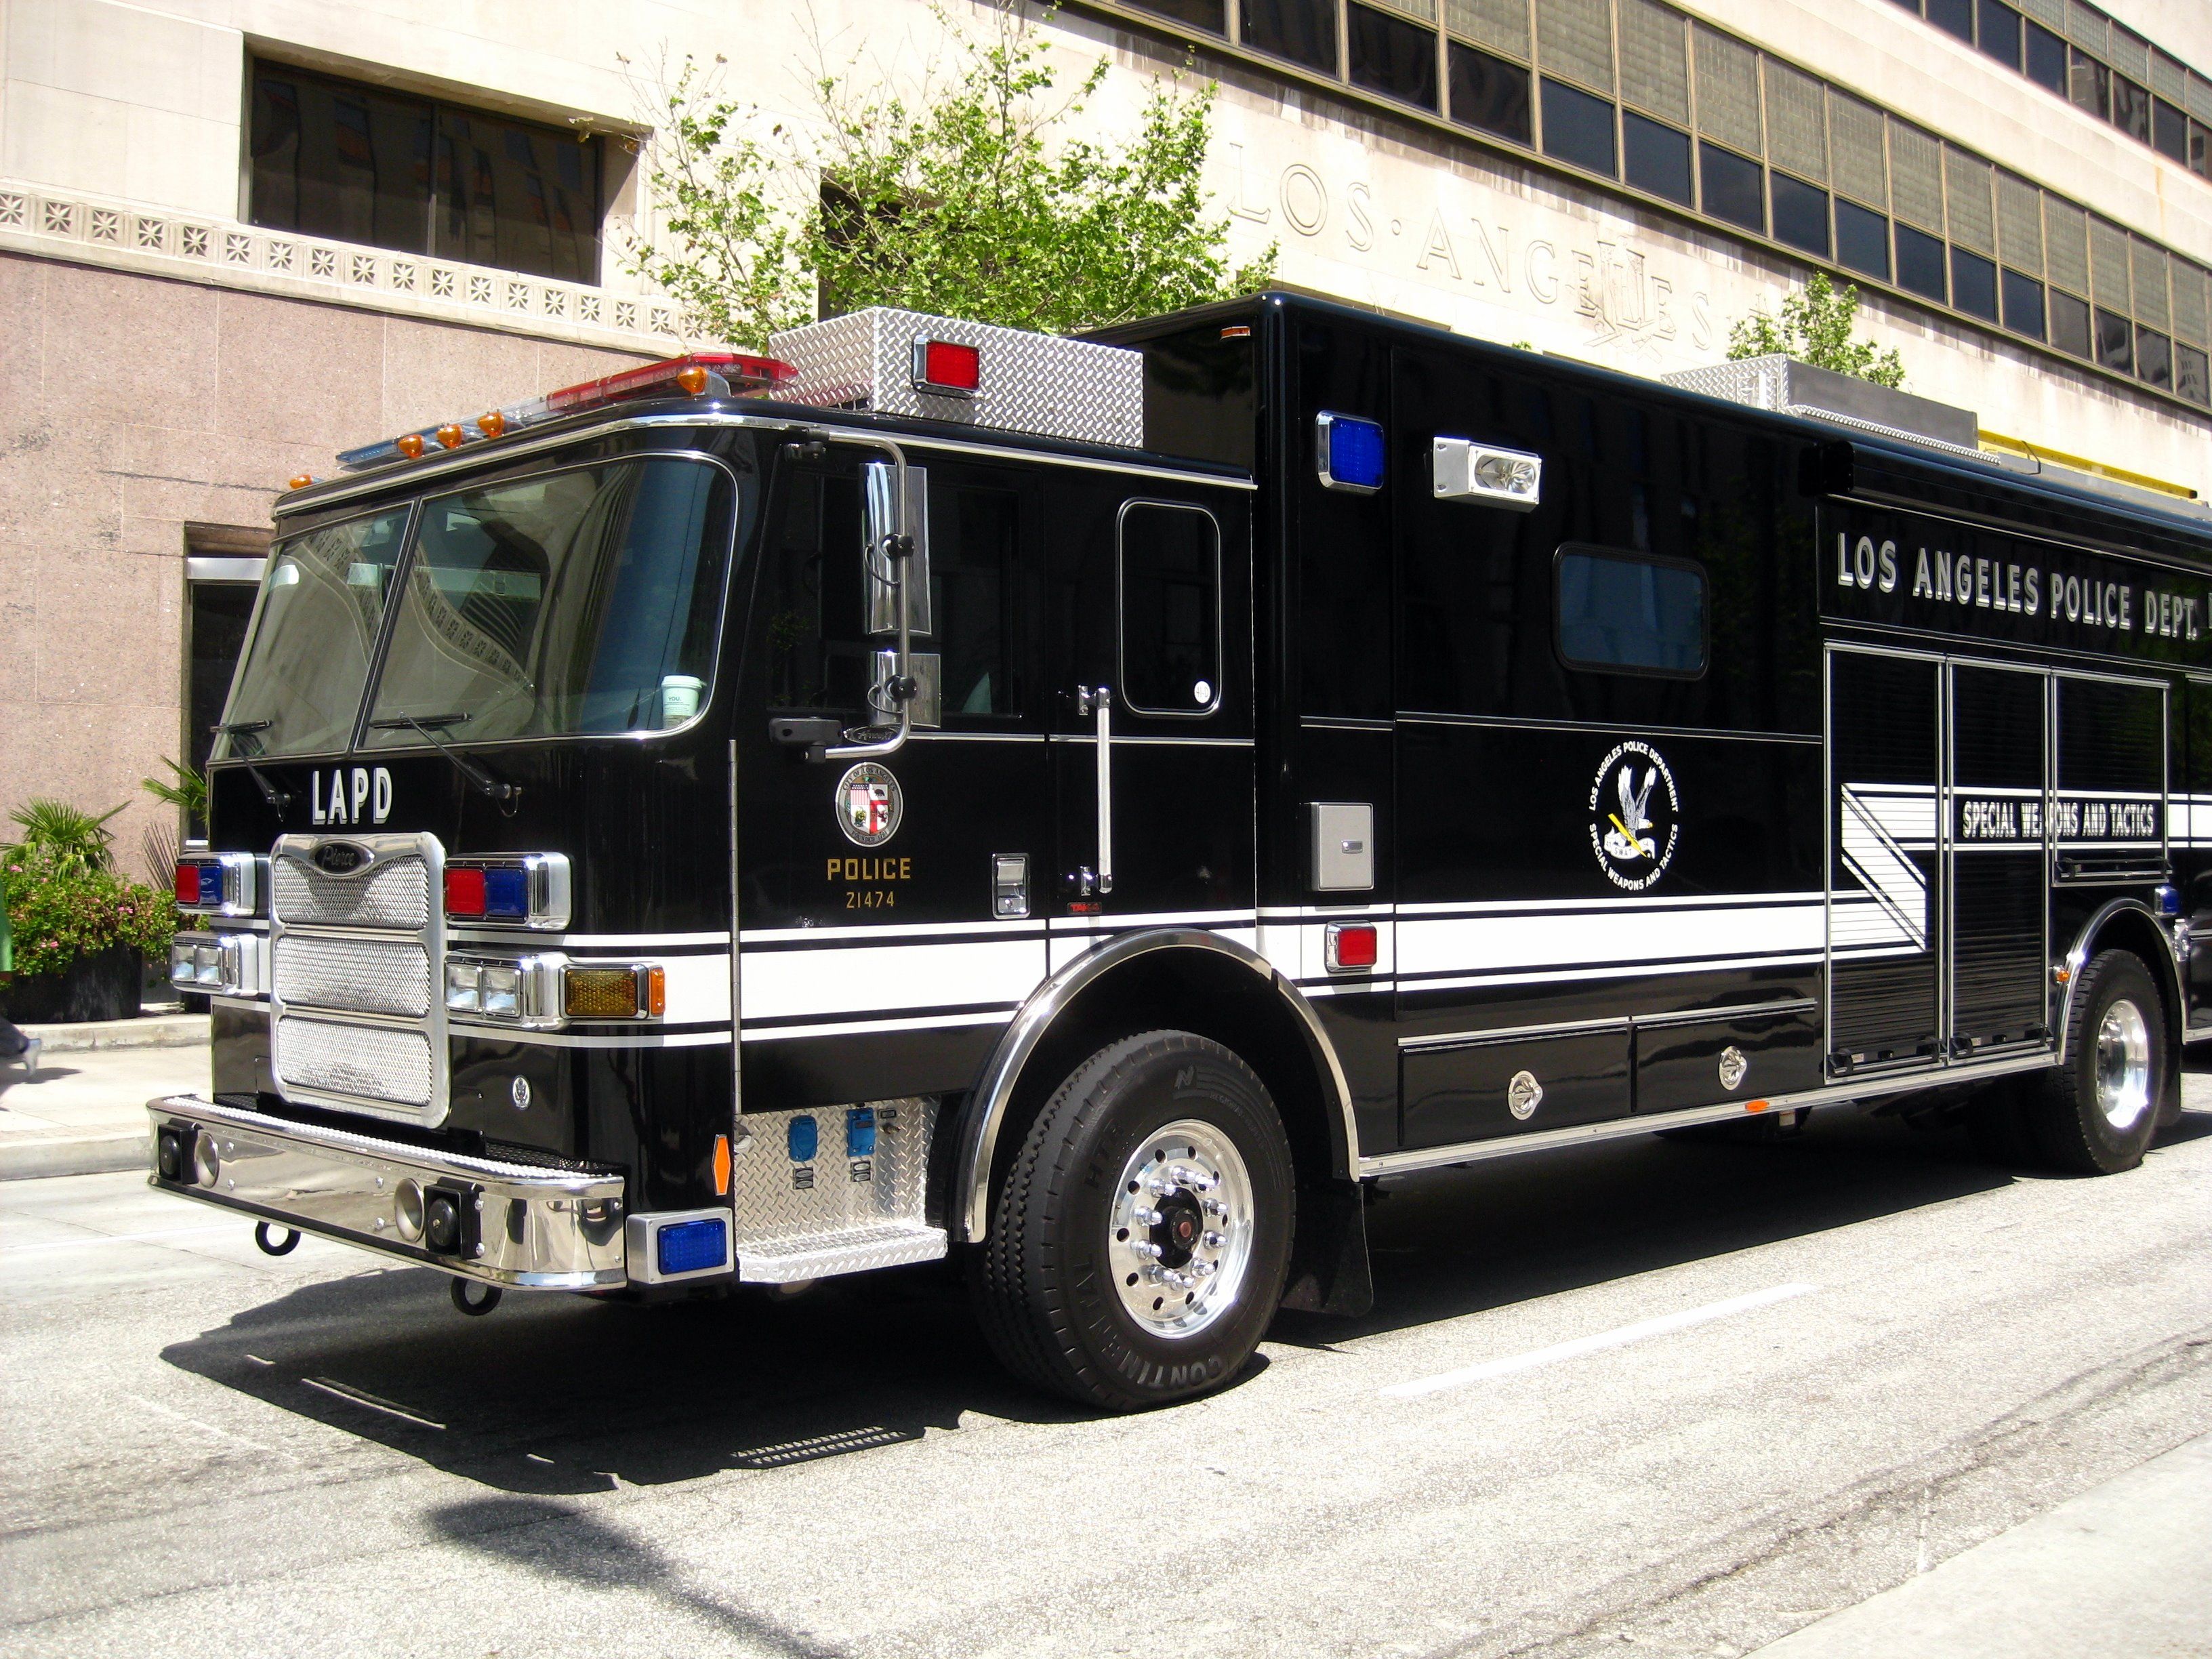 LAPD SWAT truck